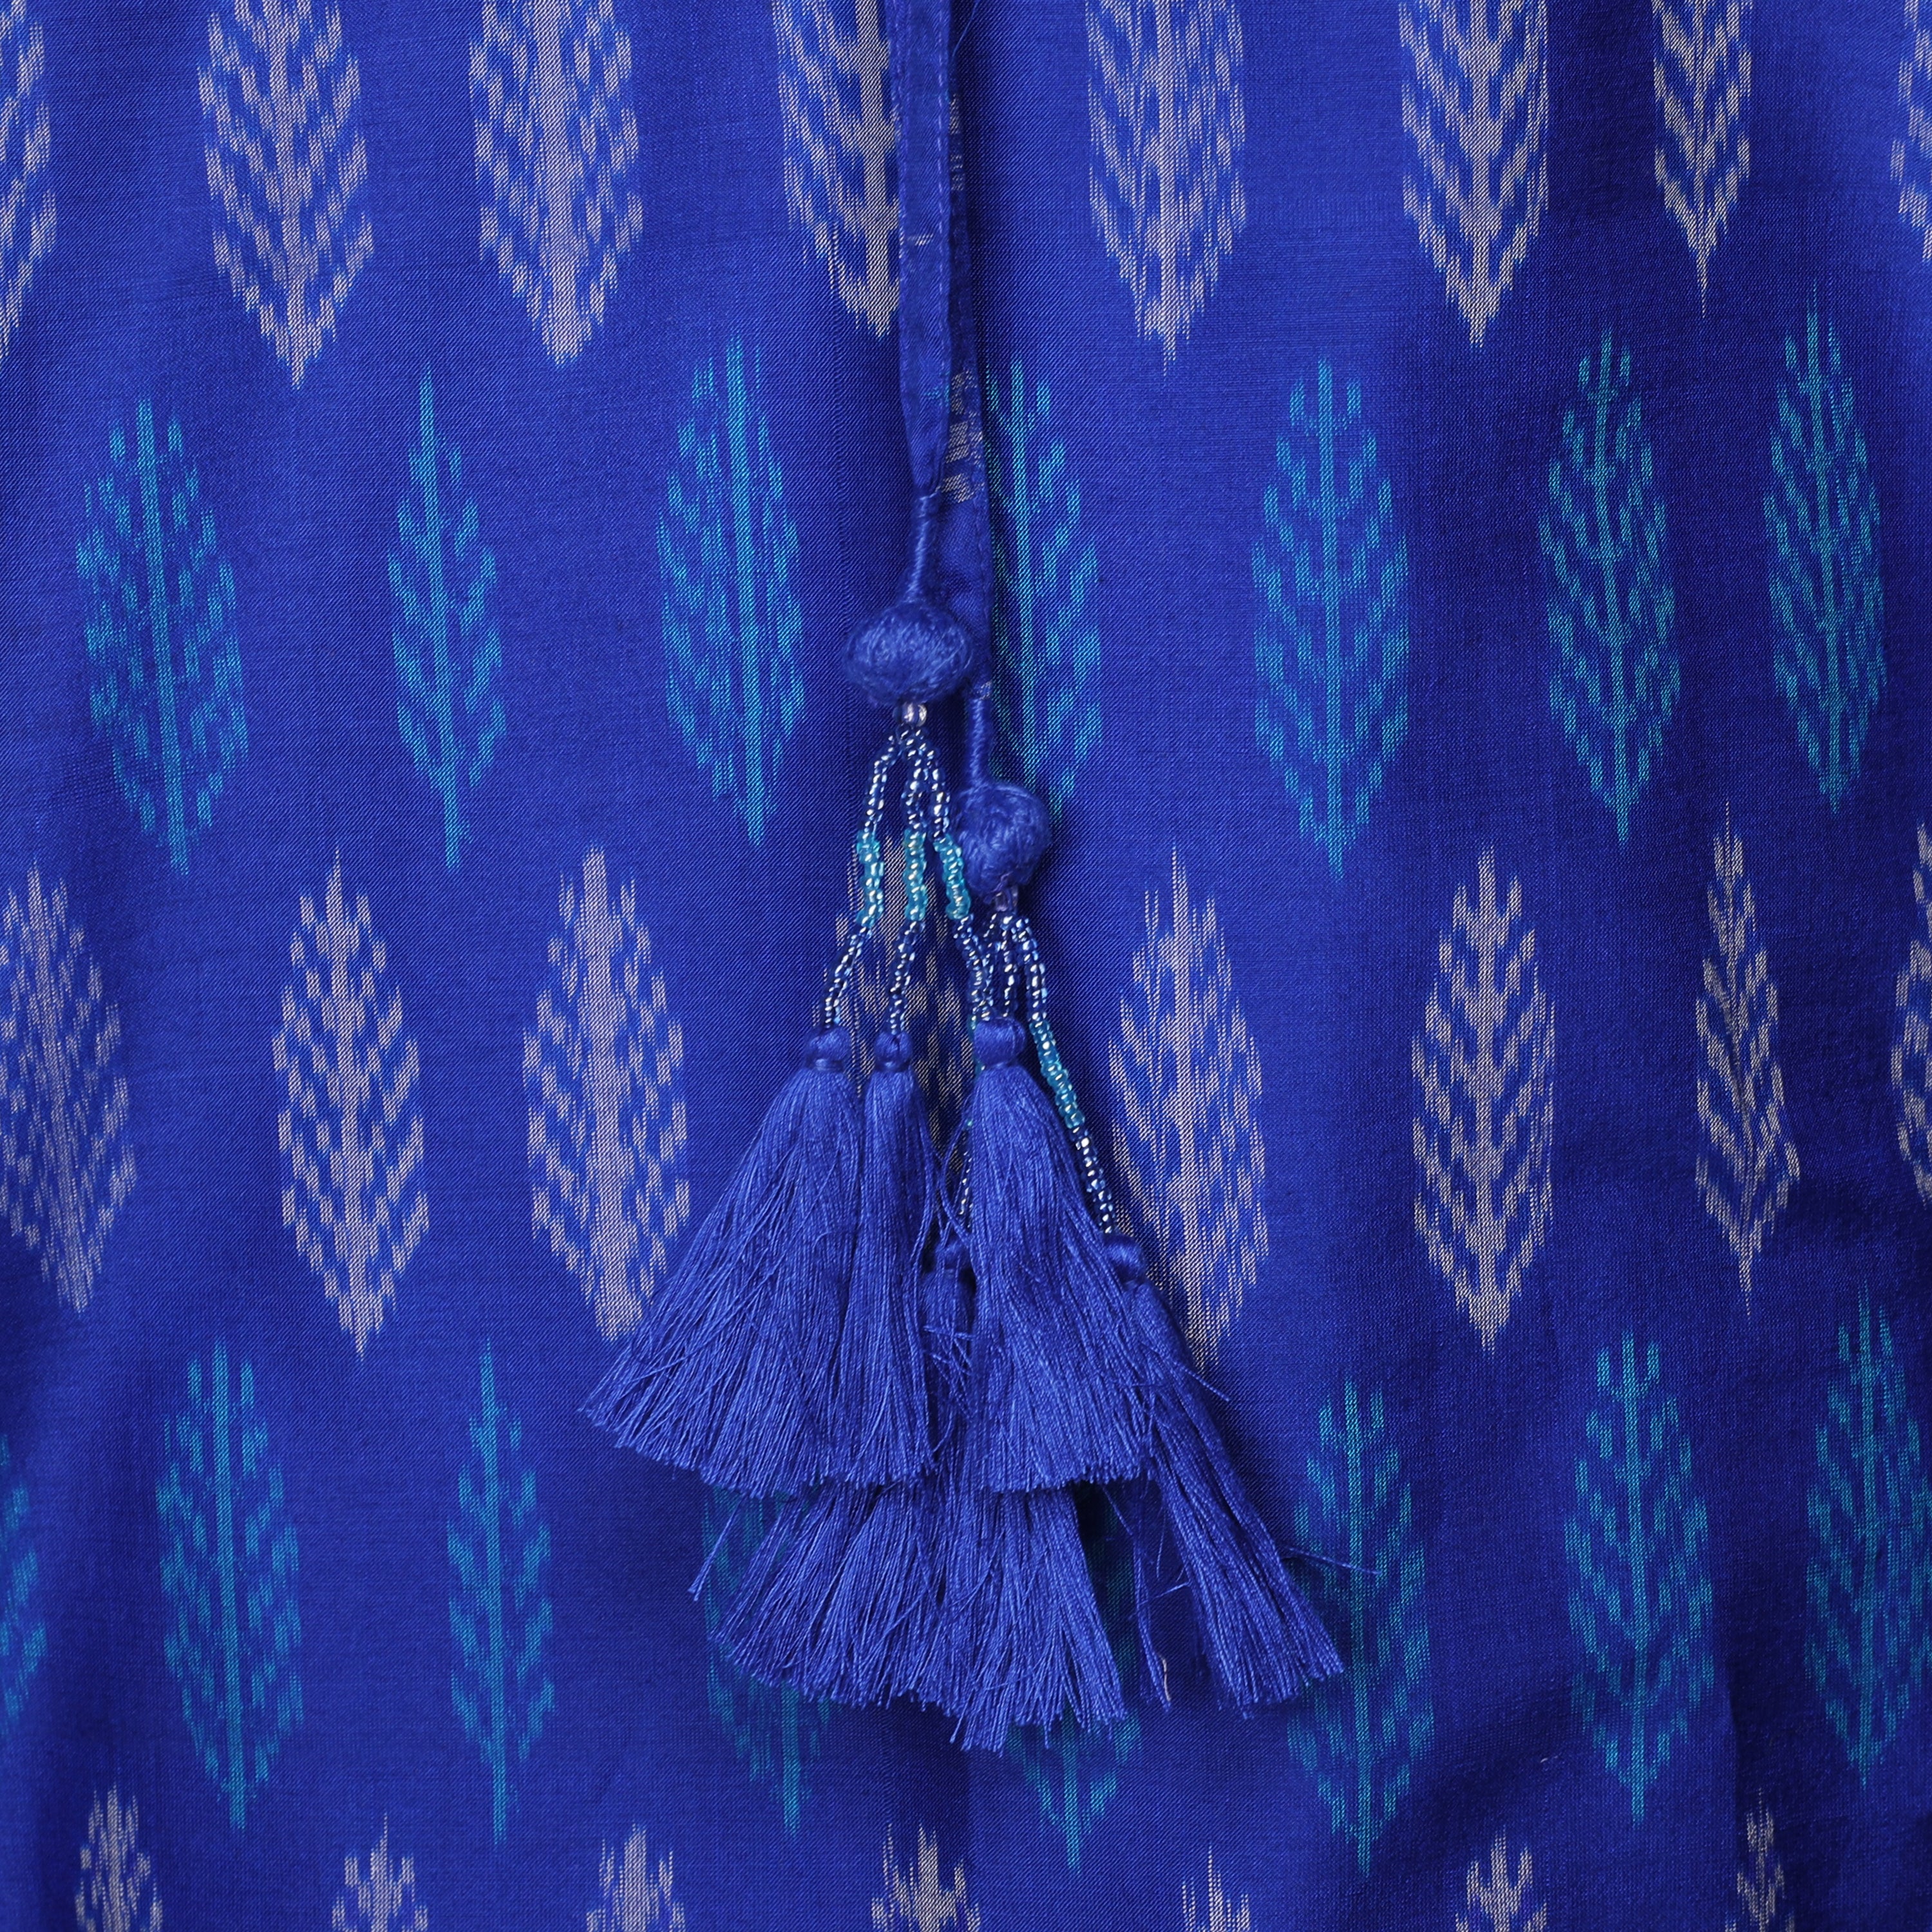 Betty Blue Silk Cotton Ikat Maxi Kaftan Dress